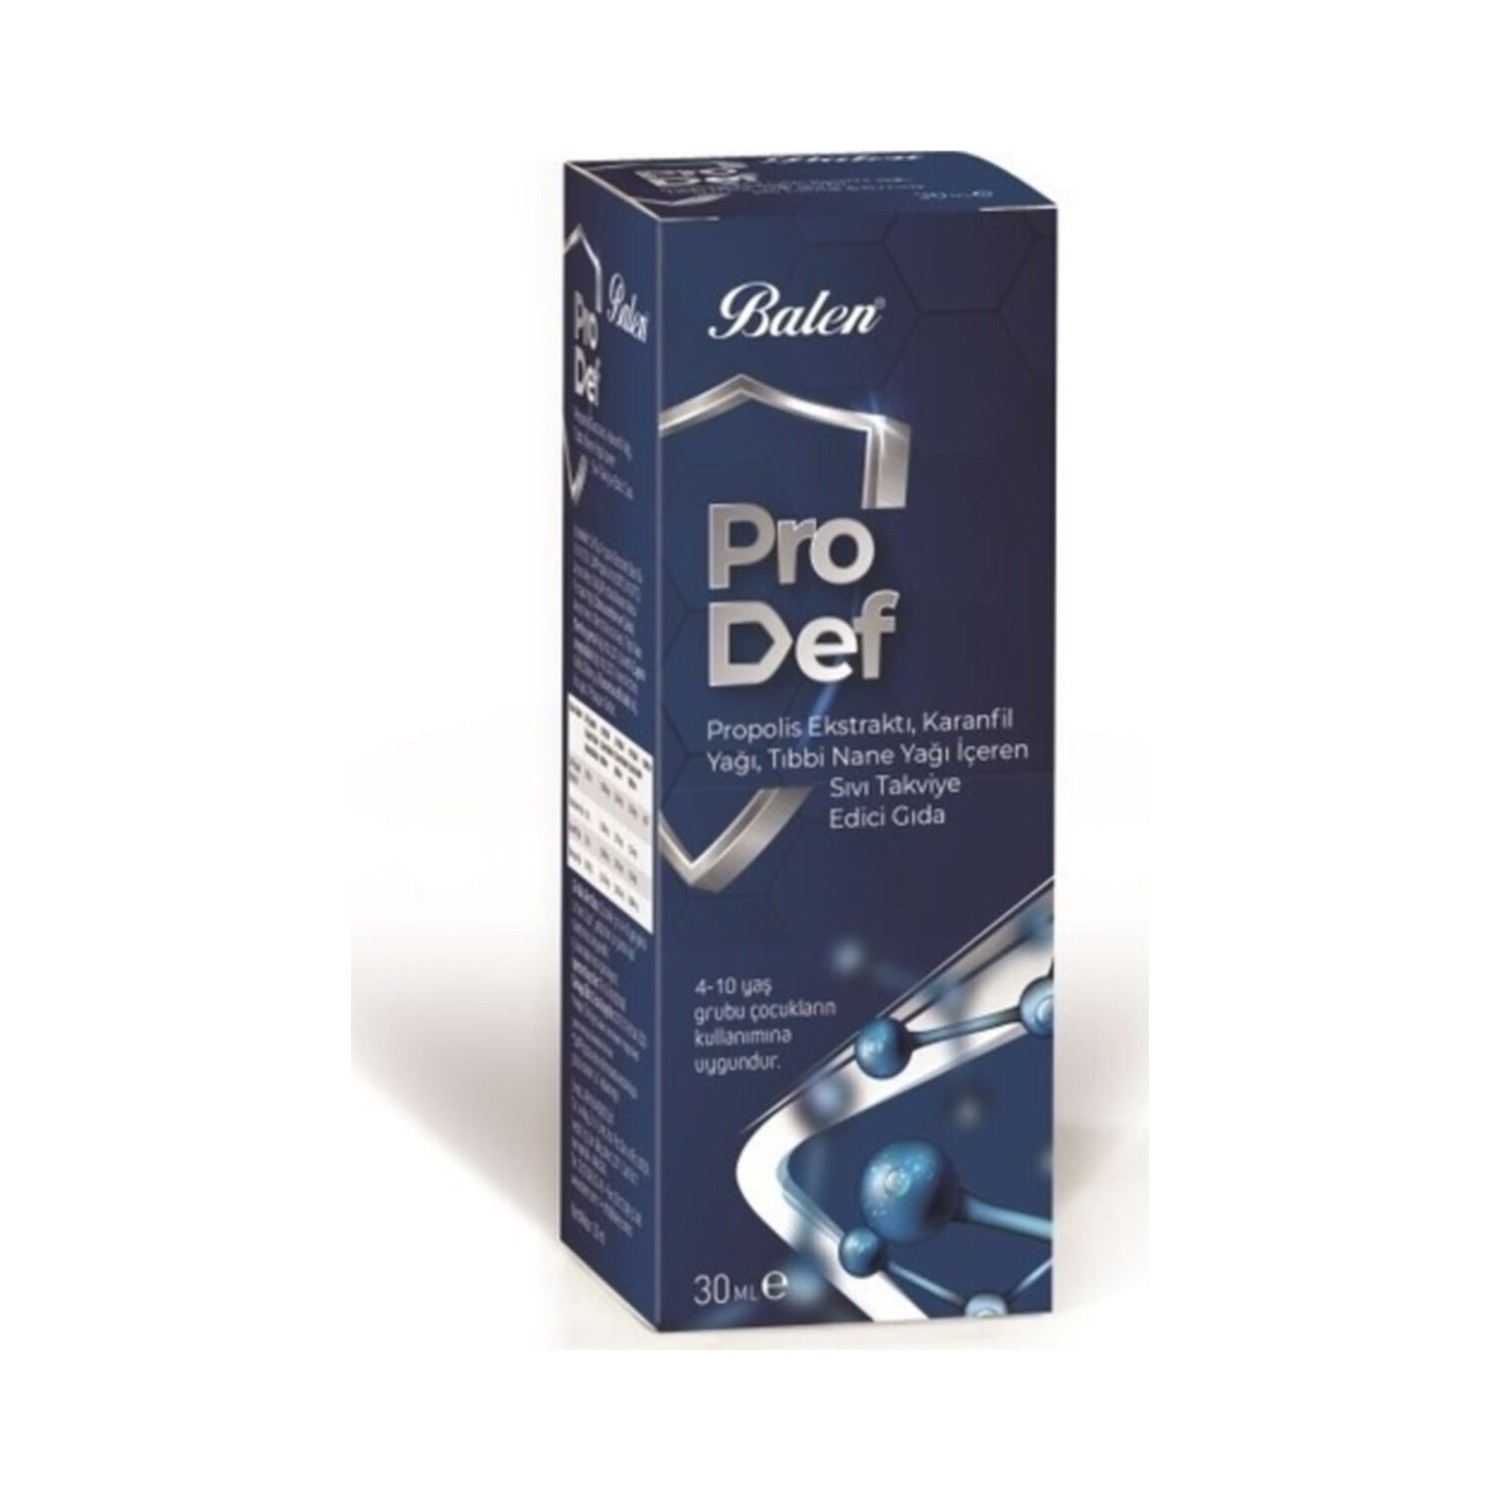 Спрей для горла Prodef с прополисом и маслом гвоздики, 3 упаковки по 30 мл цена и фото